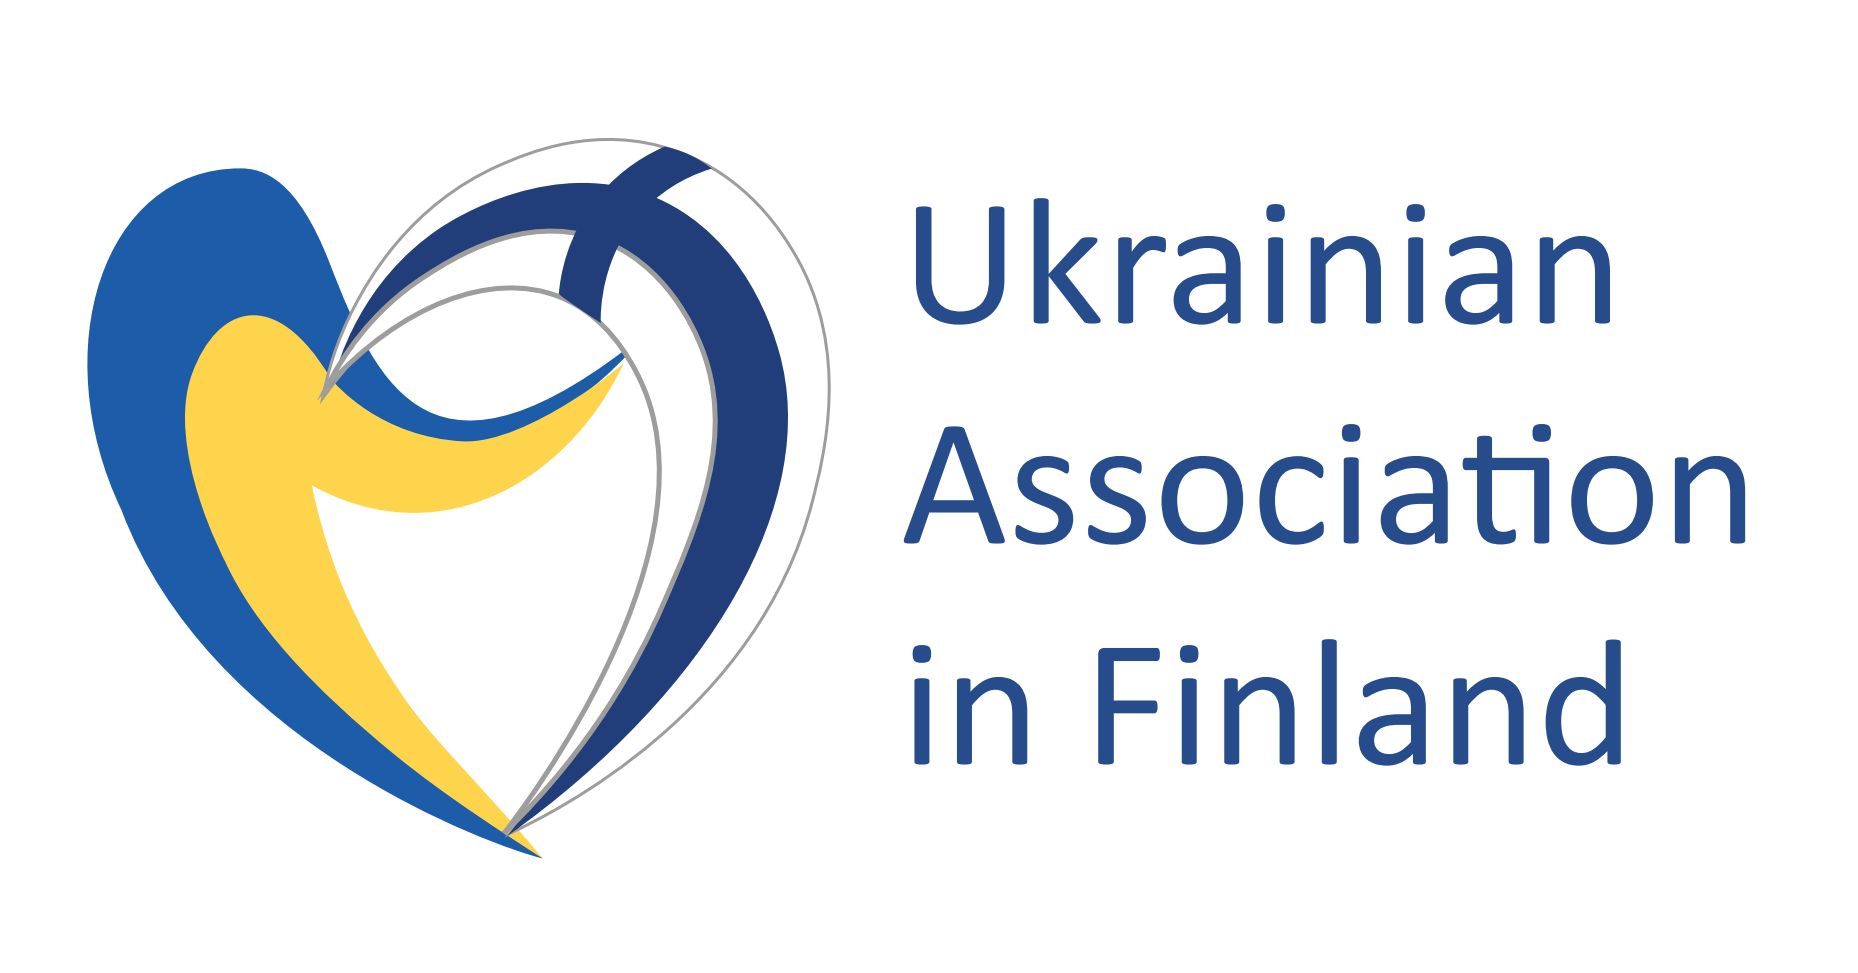 Ukrainian Association in Finland